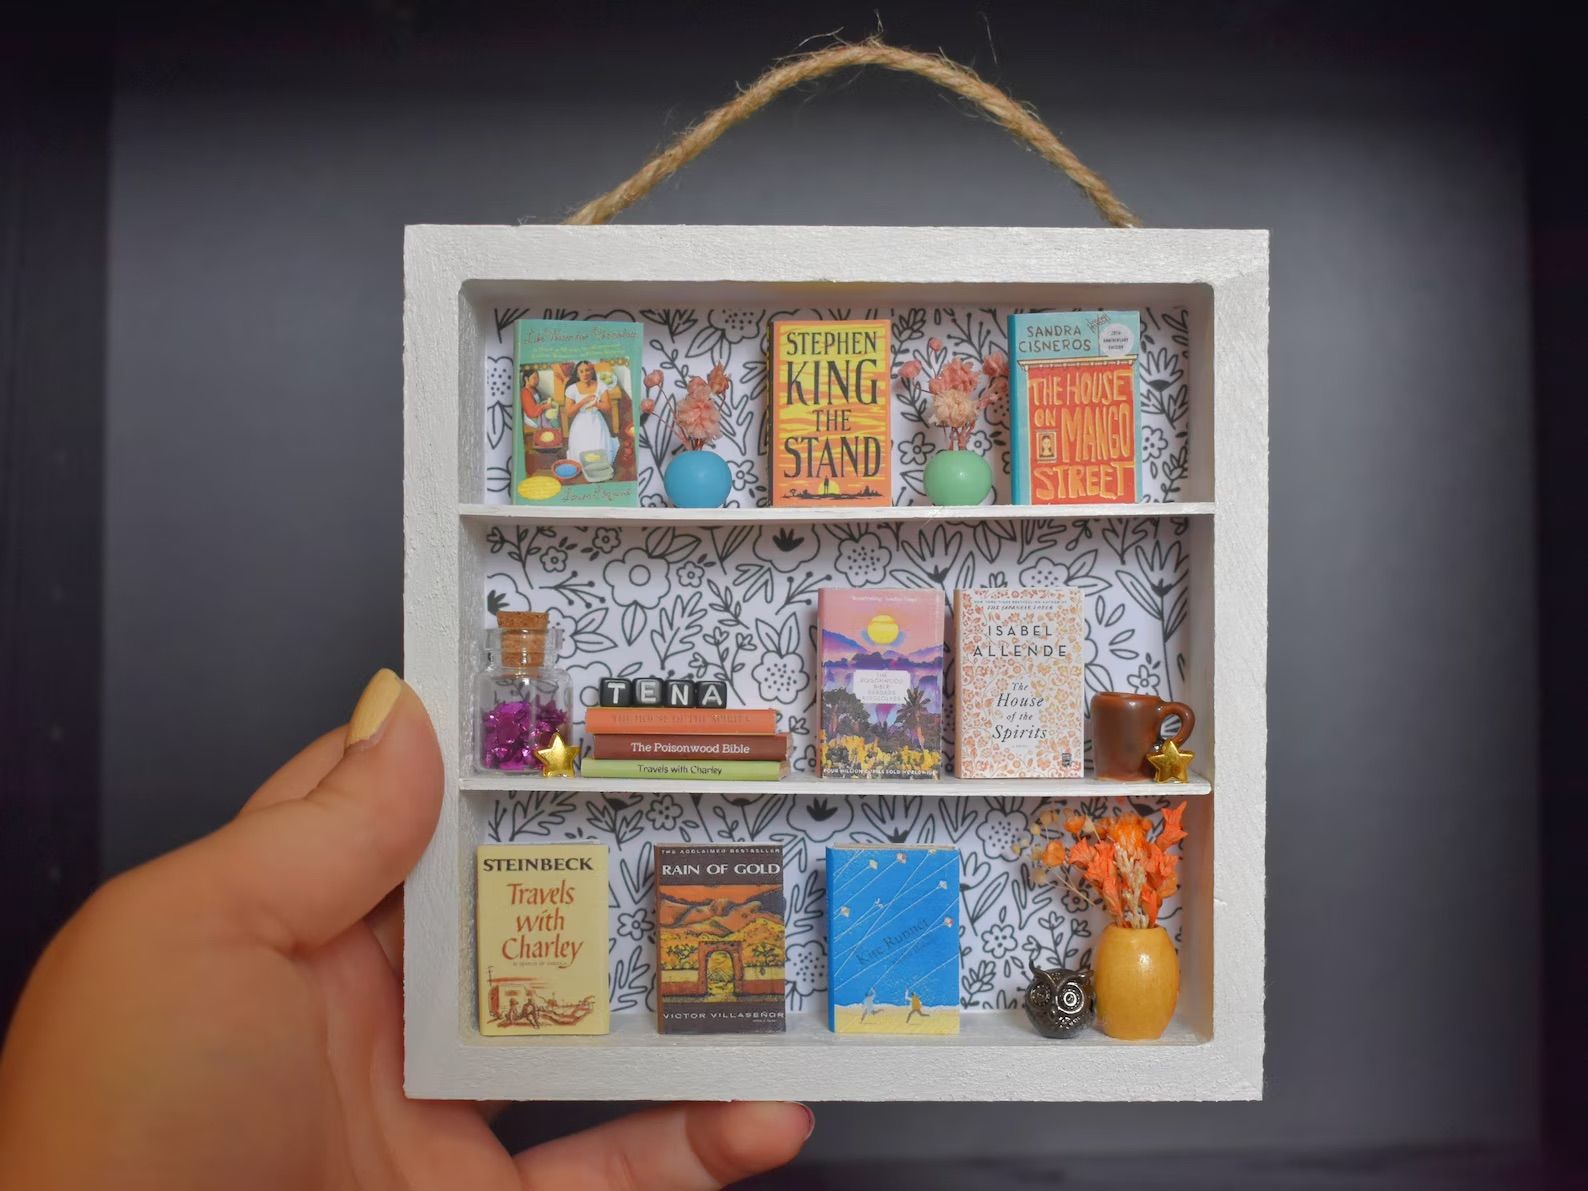 Custom Miniature Square Bookshelf in a hand.